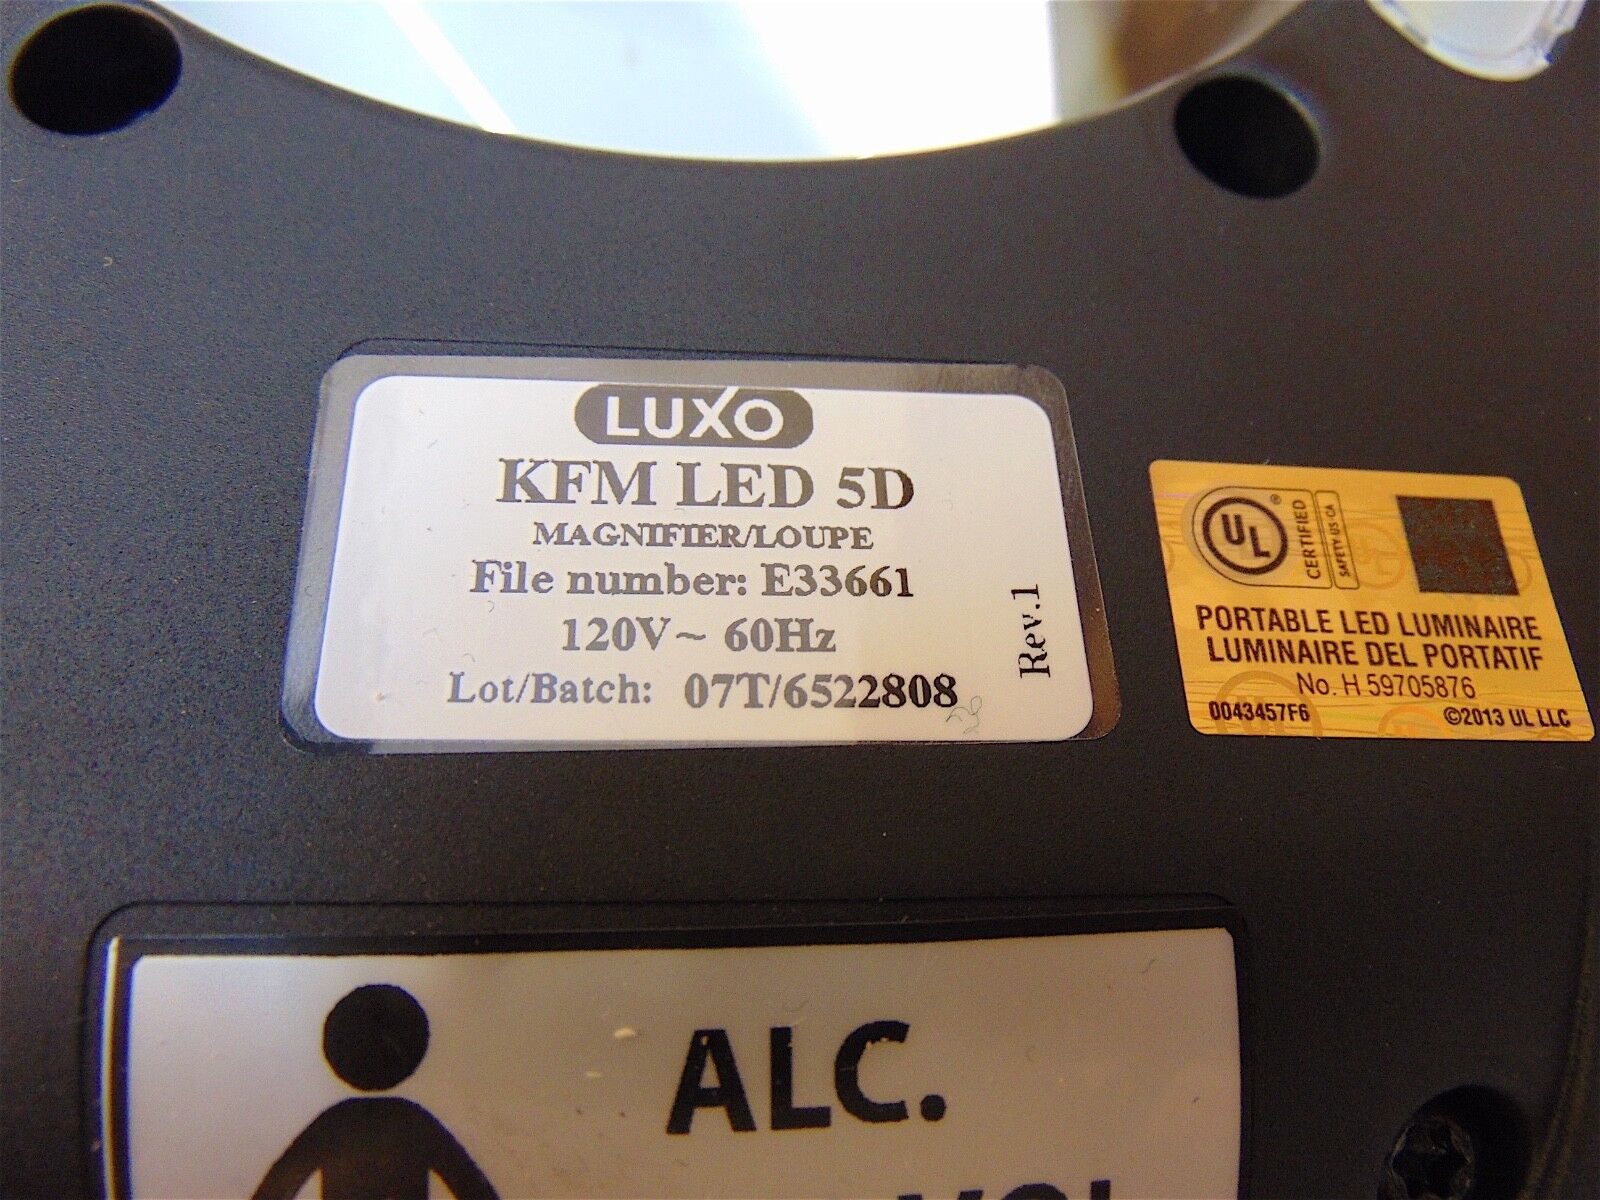 Luxo KFM LED 5D Magnifier/Light Model 18255B NEW IN BOX - S3836 | eBay